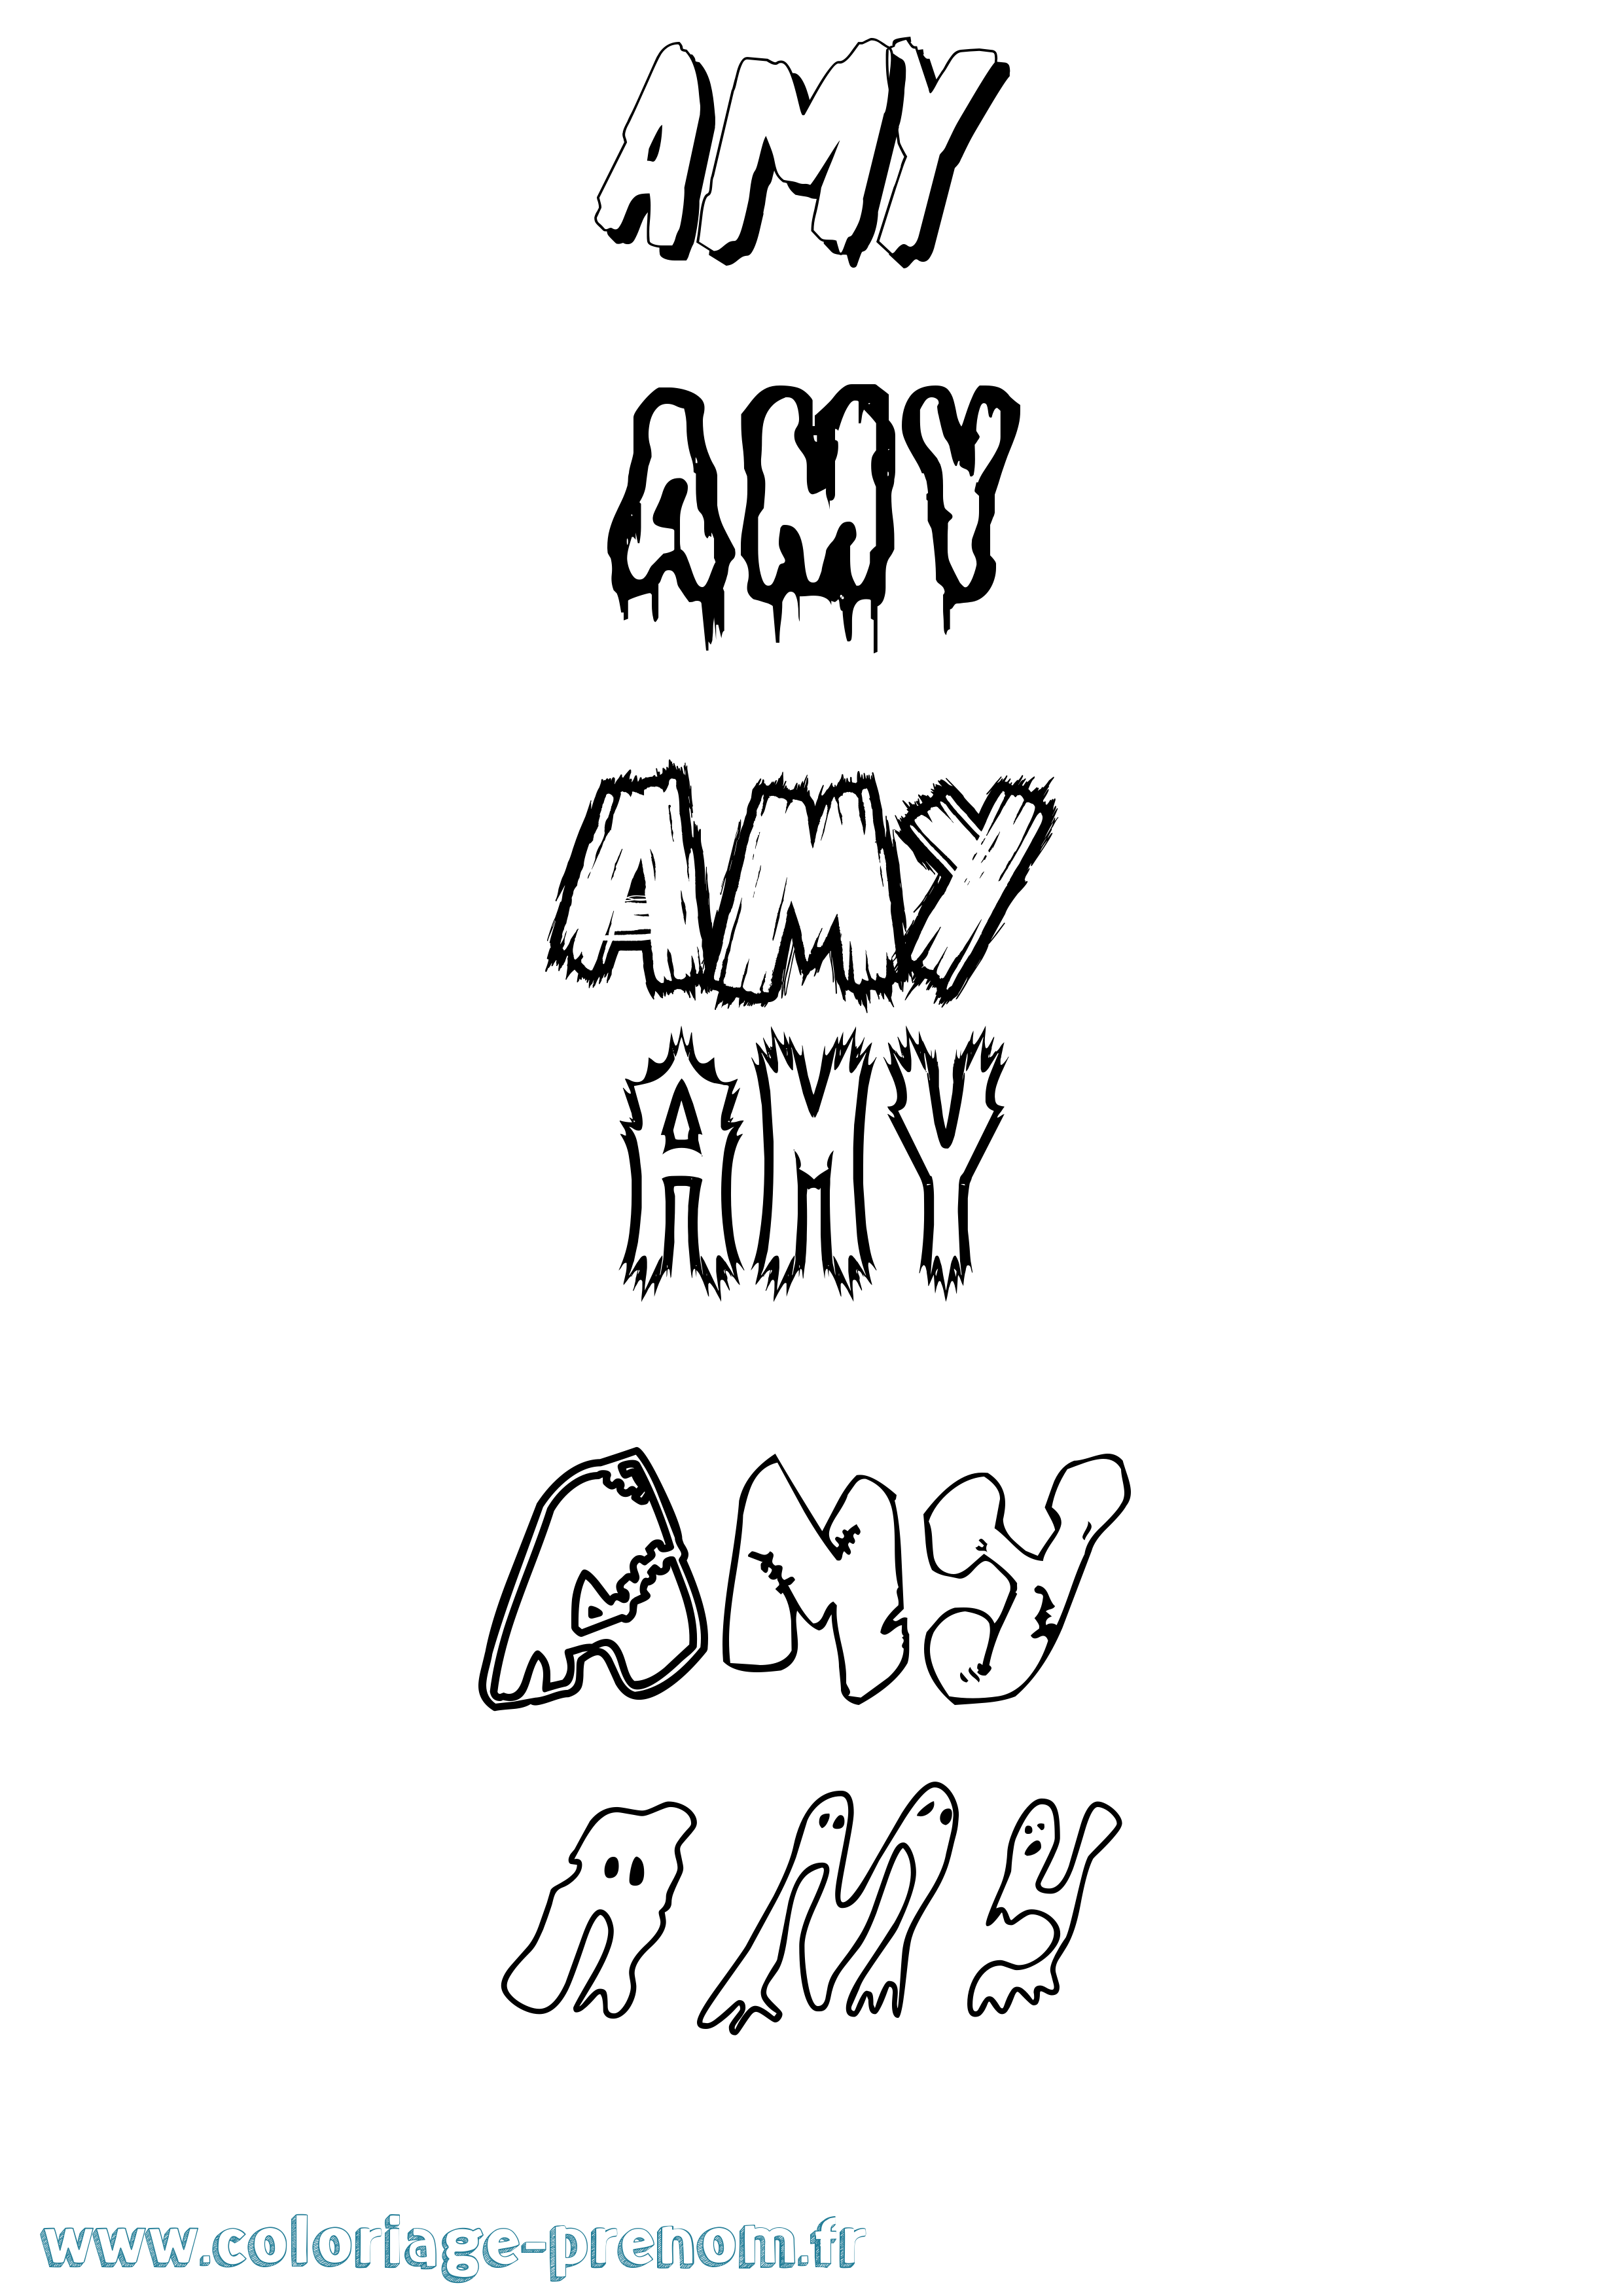 Coloriage prénom Amy Frisson